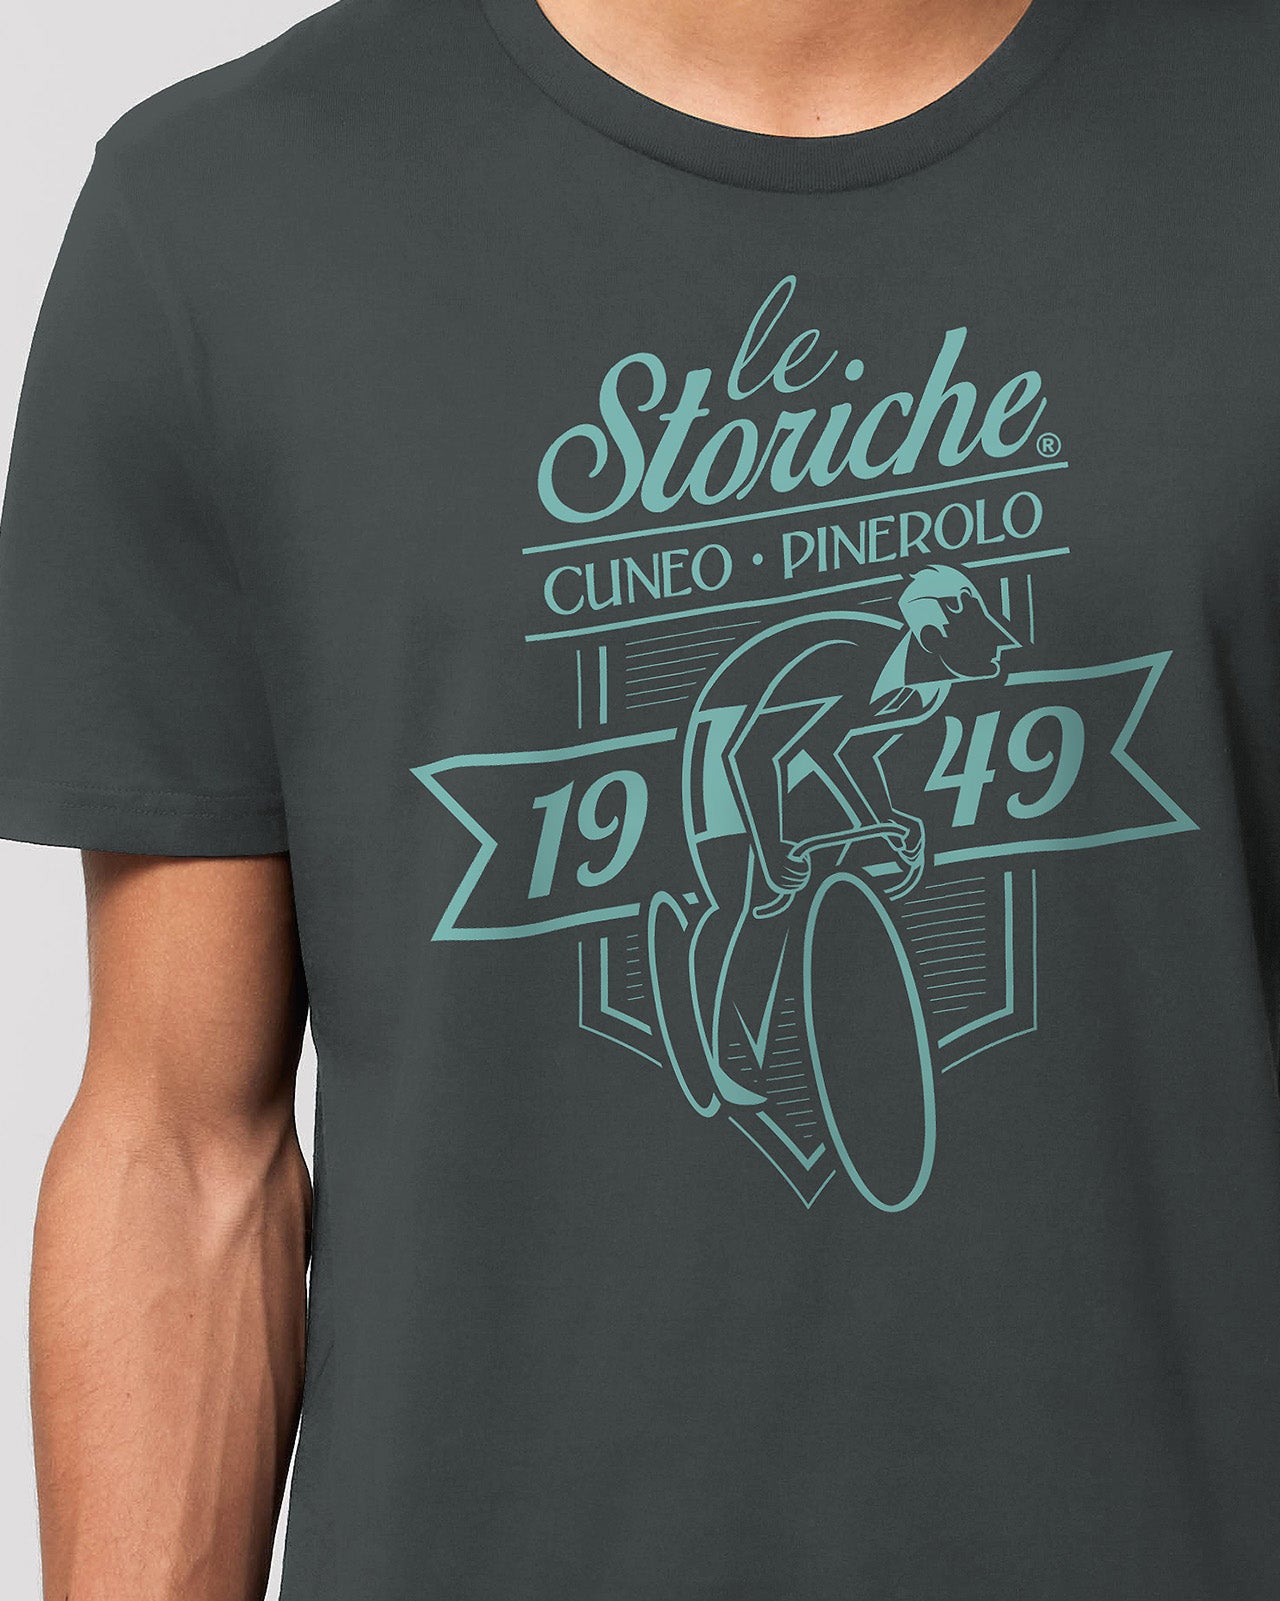 t-shirt "le Storiche" mod. 1949